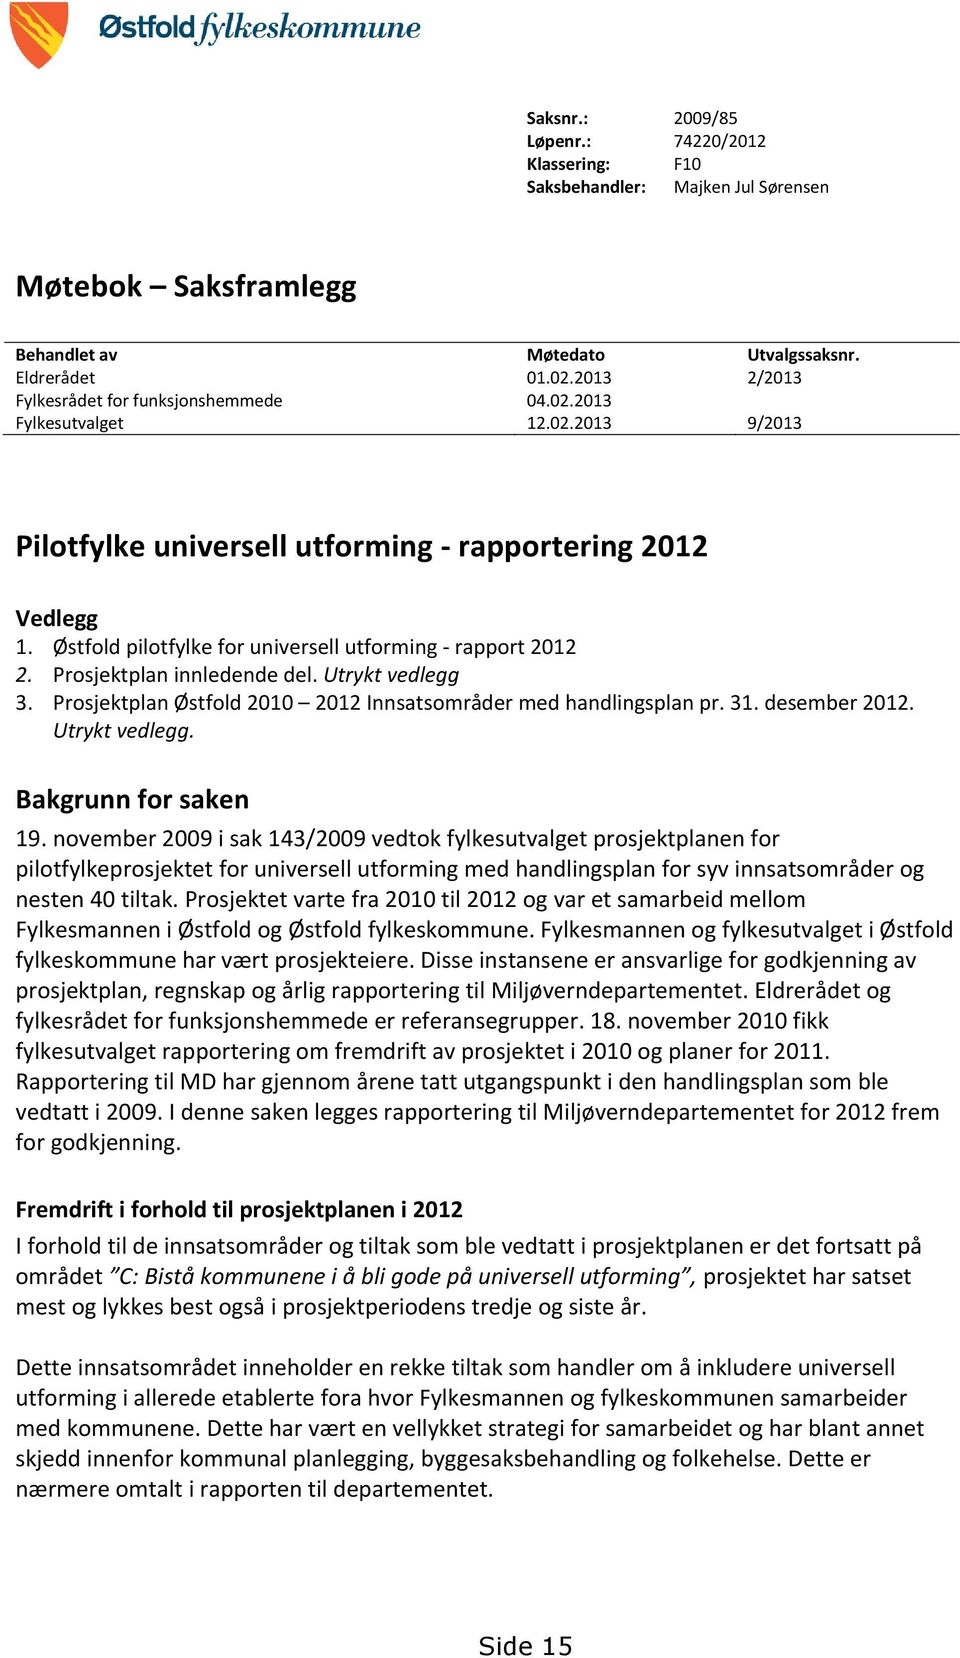 Østfold pilotfylke for universell utforming - rapport 2012 2. Prosjektplan innledende del. Utrykt vedlegg 3. Prosjektplan Østfold 2010 2012 Innsatsområder med handlingsplan pr. 31. desember 2012.